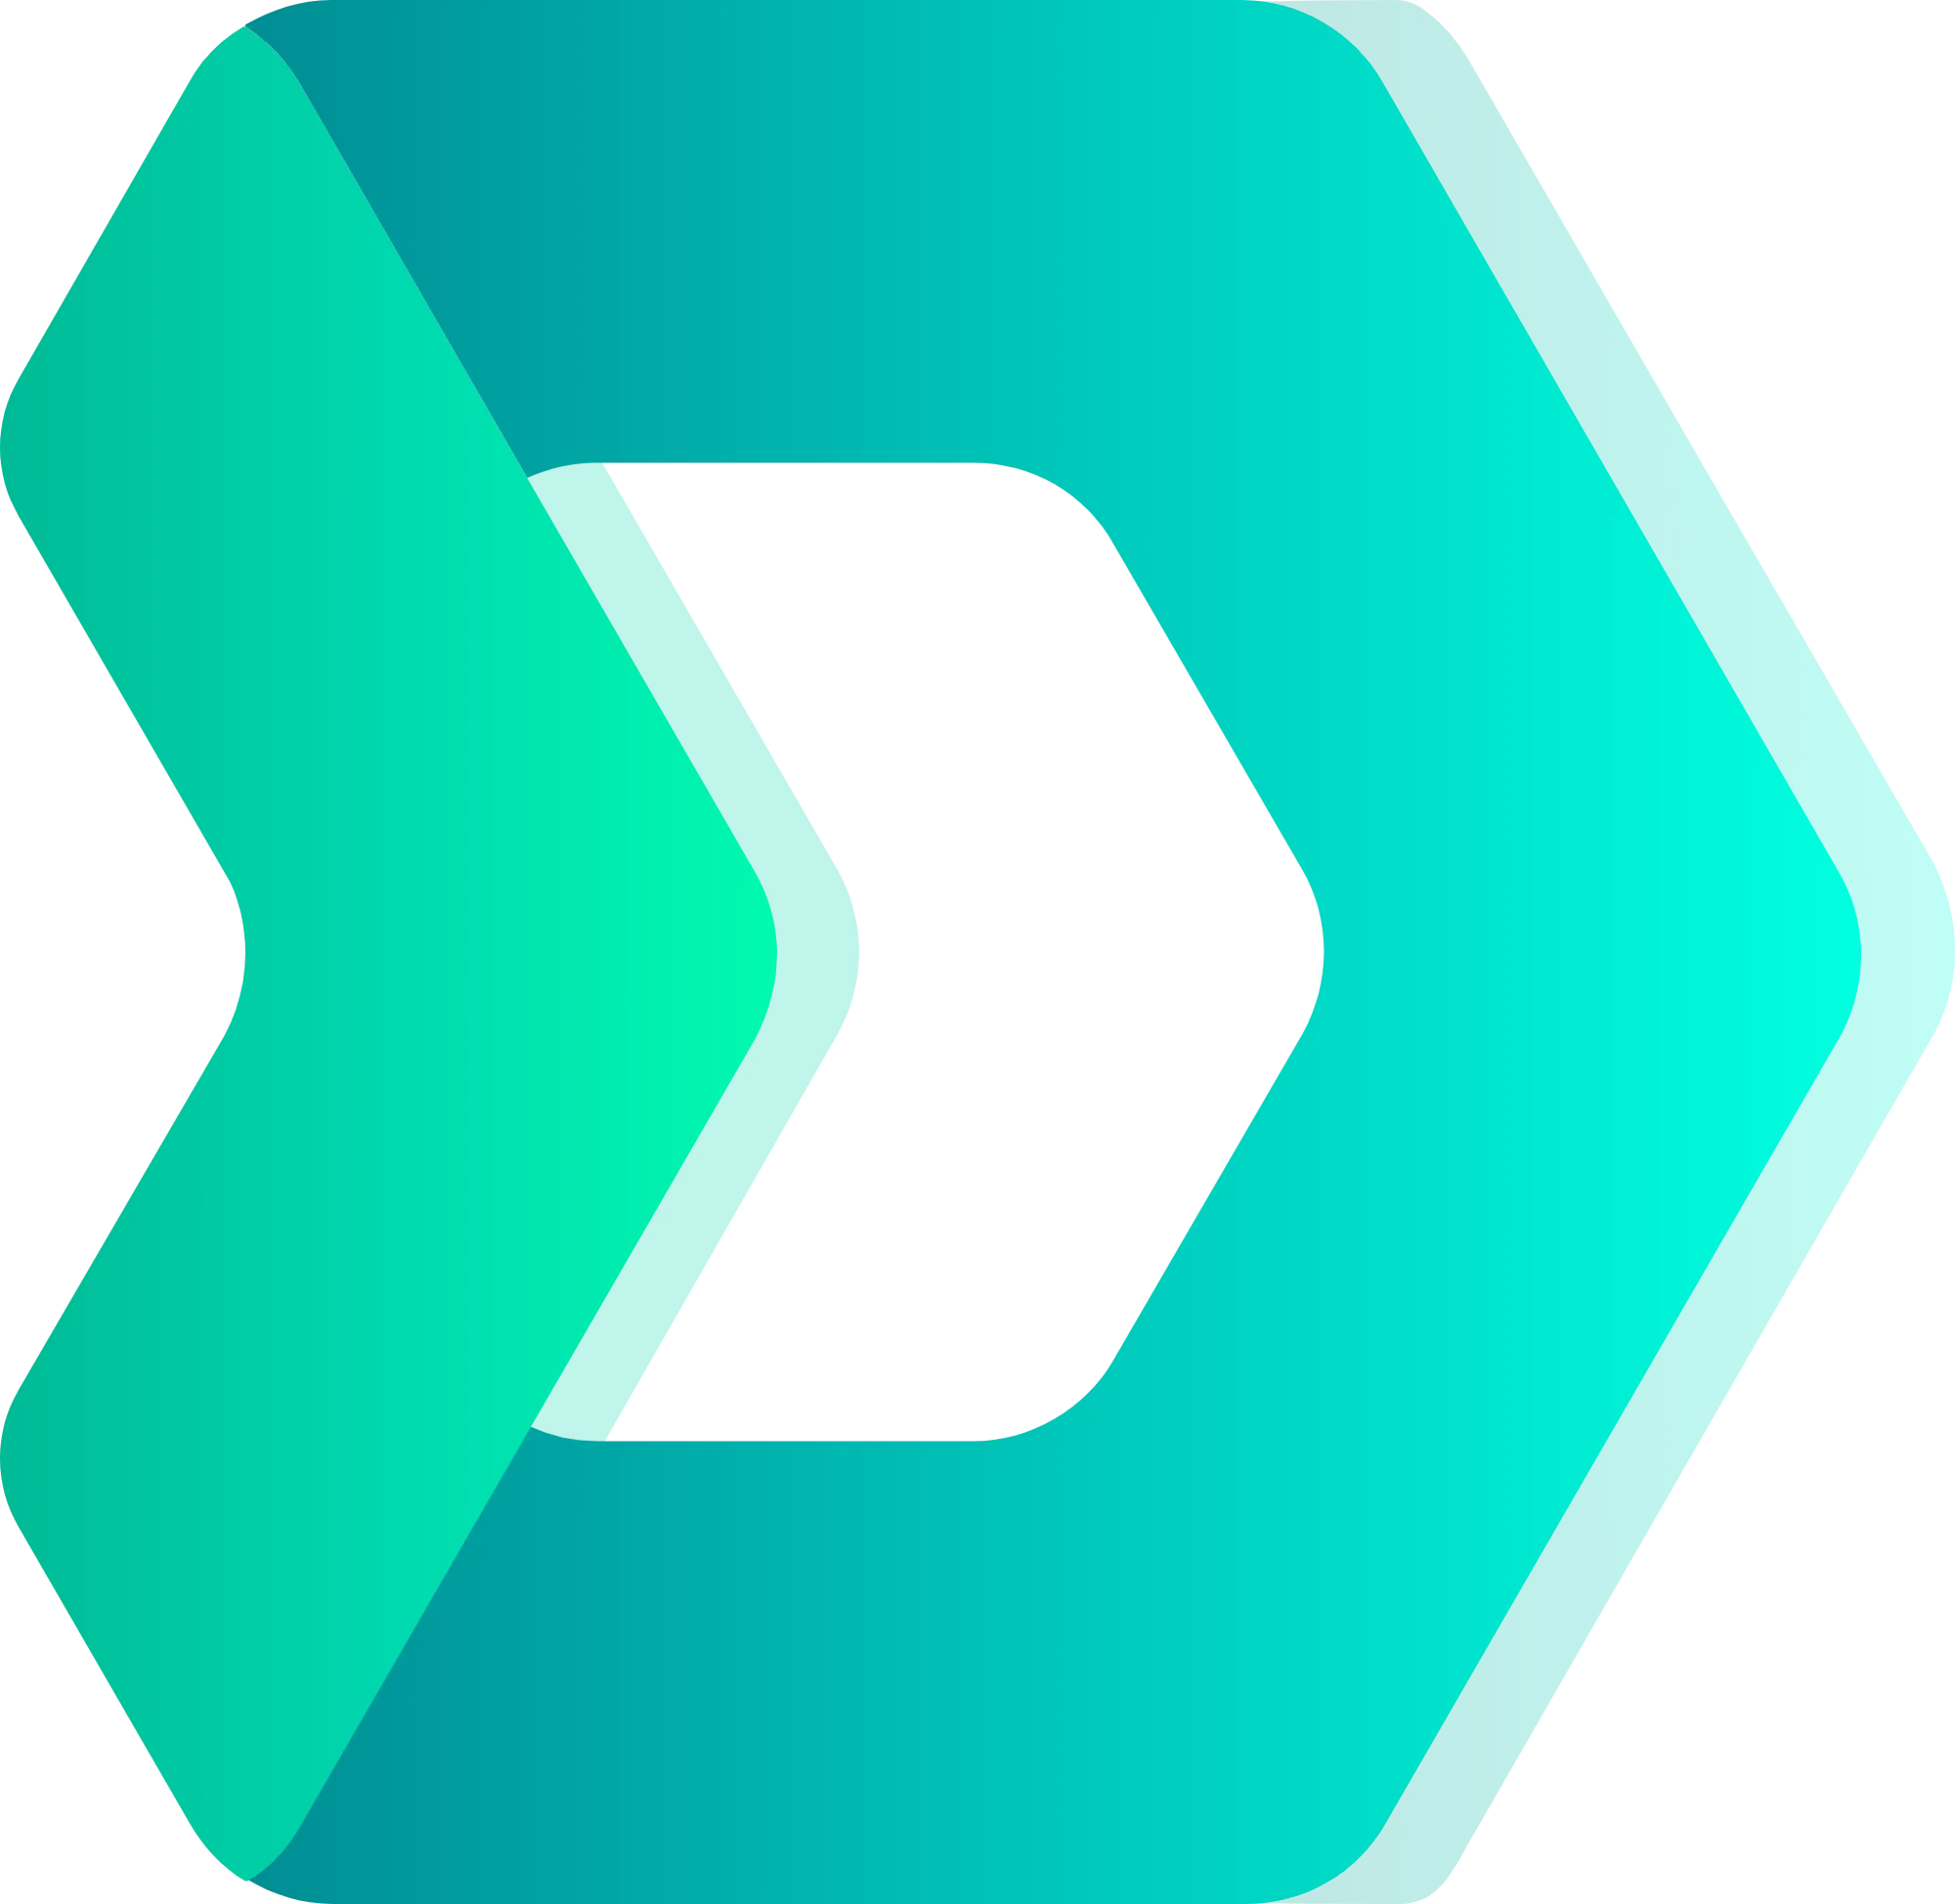 DMarket logo in svg format